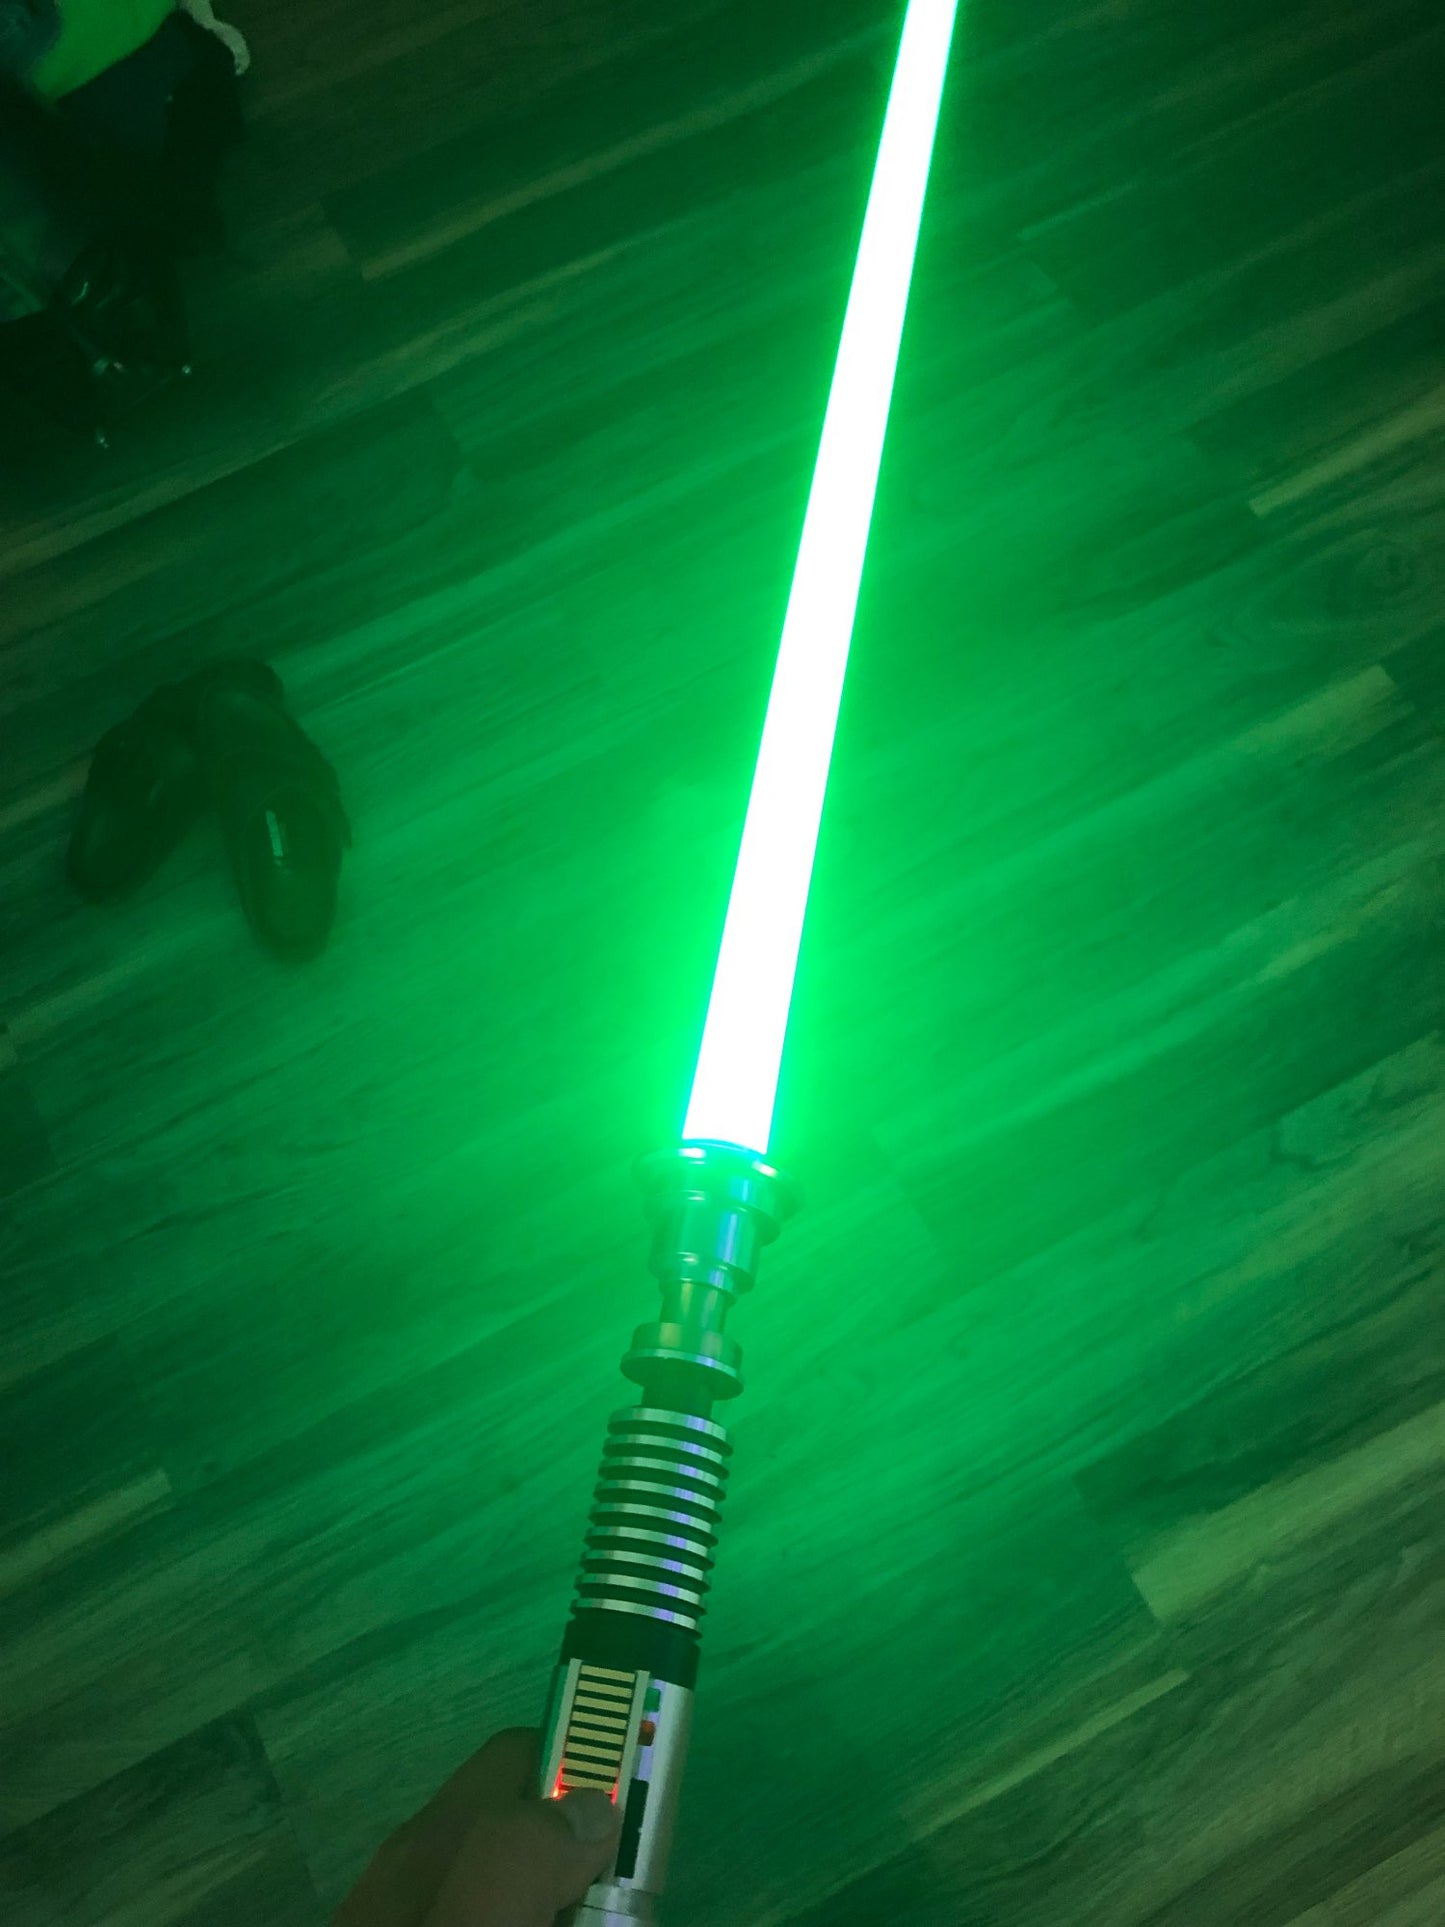 Luke Skywalker EP6 Control Box Sensitive Swing Flashing Light Toys for Kids Led Toys Lightsaber